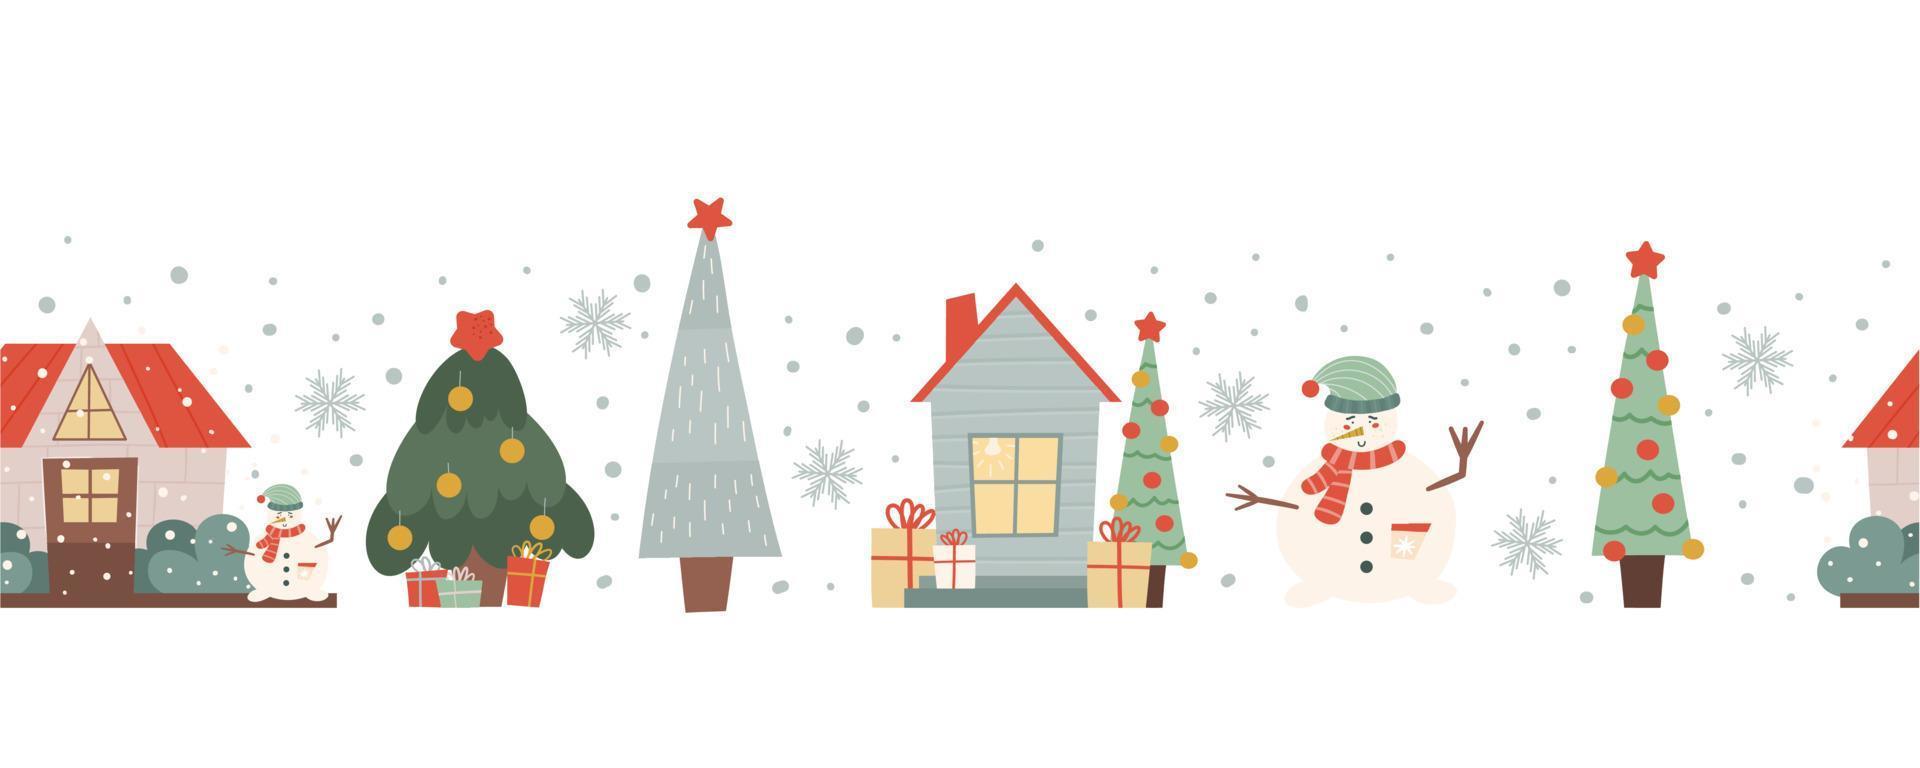 winter naadloze grens met huizen, kerstbomen en een sneeuwpop. Kerstmis naadloos patroon. vectorillustratie in vlakke stijl. vector